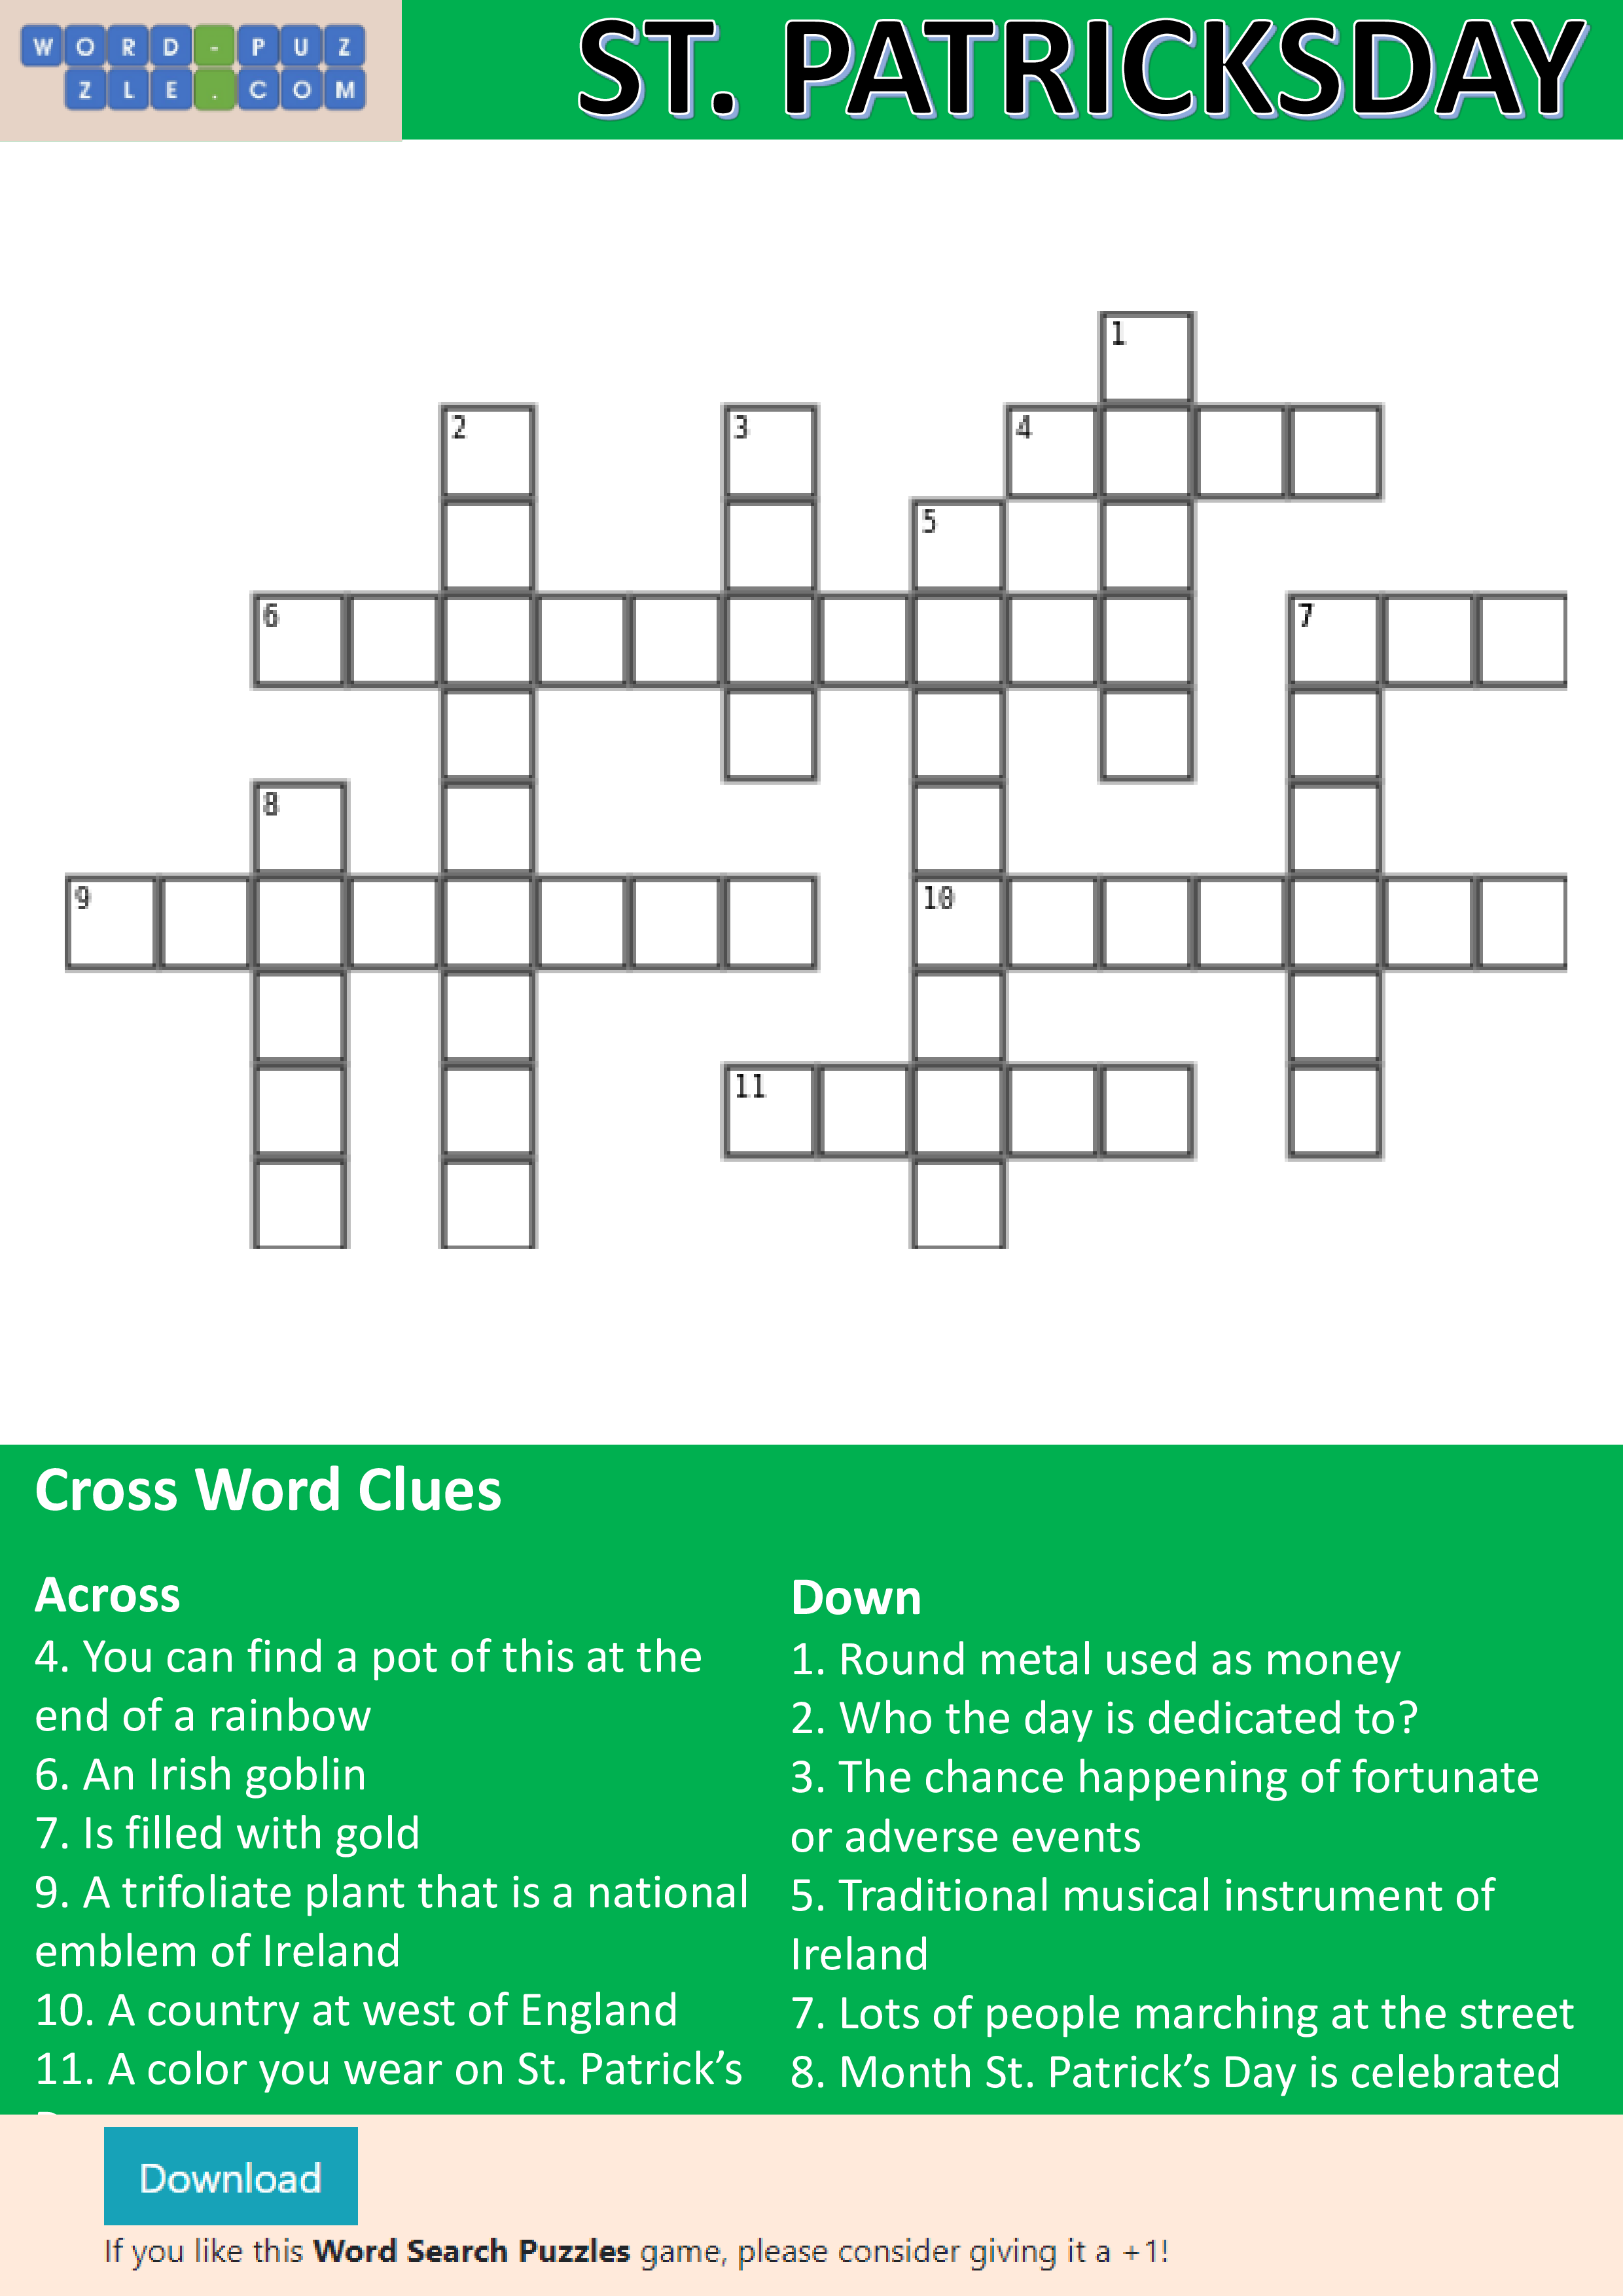 St Patrick's Day crossword puzzle 模板